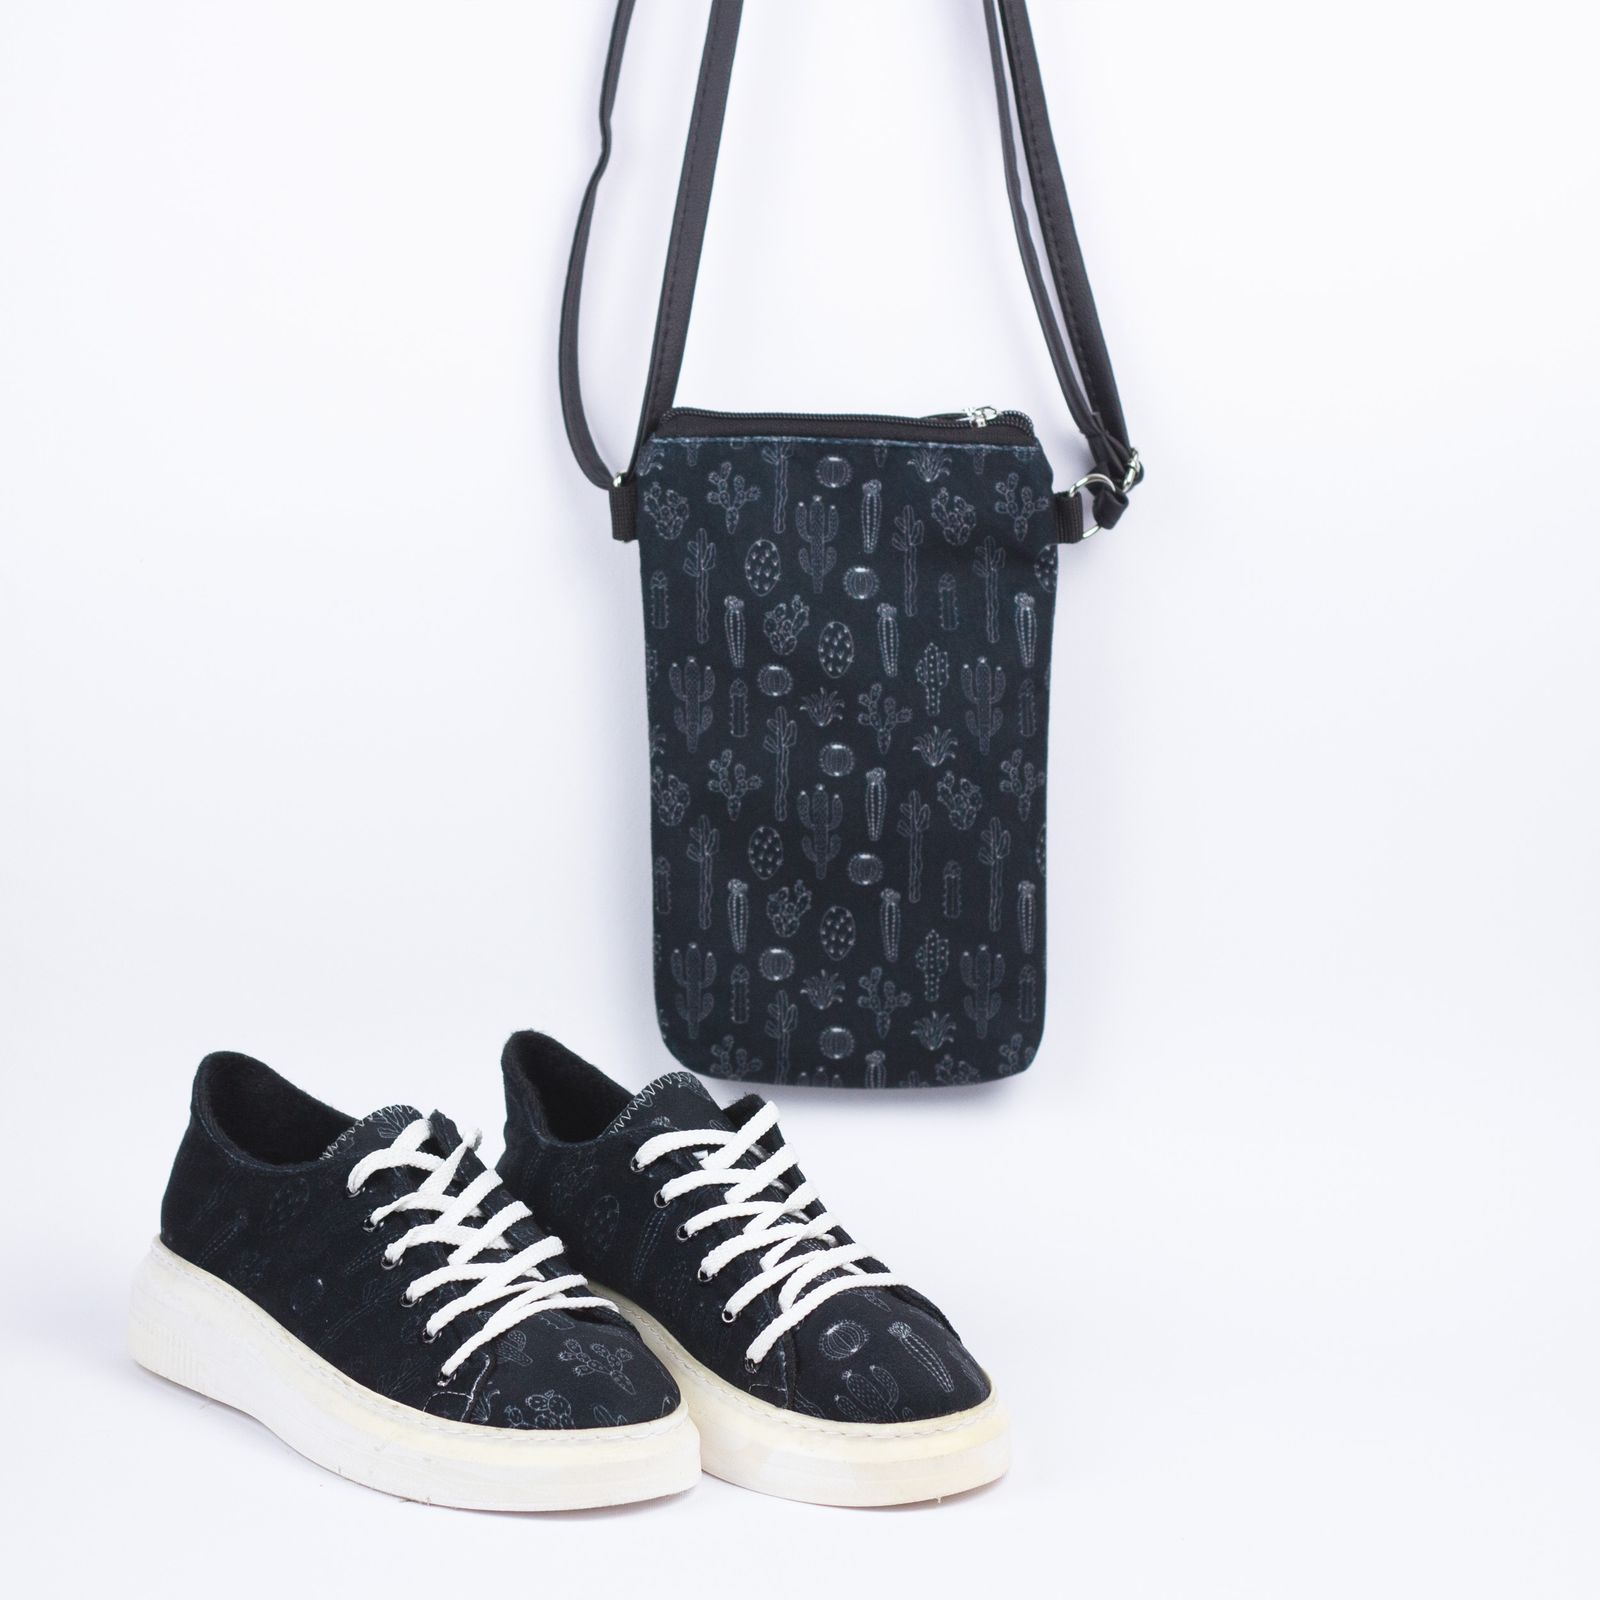 ست کیف و کفش زنانه مدل کاکتوس کد bllack -  - 5